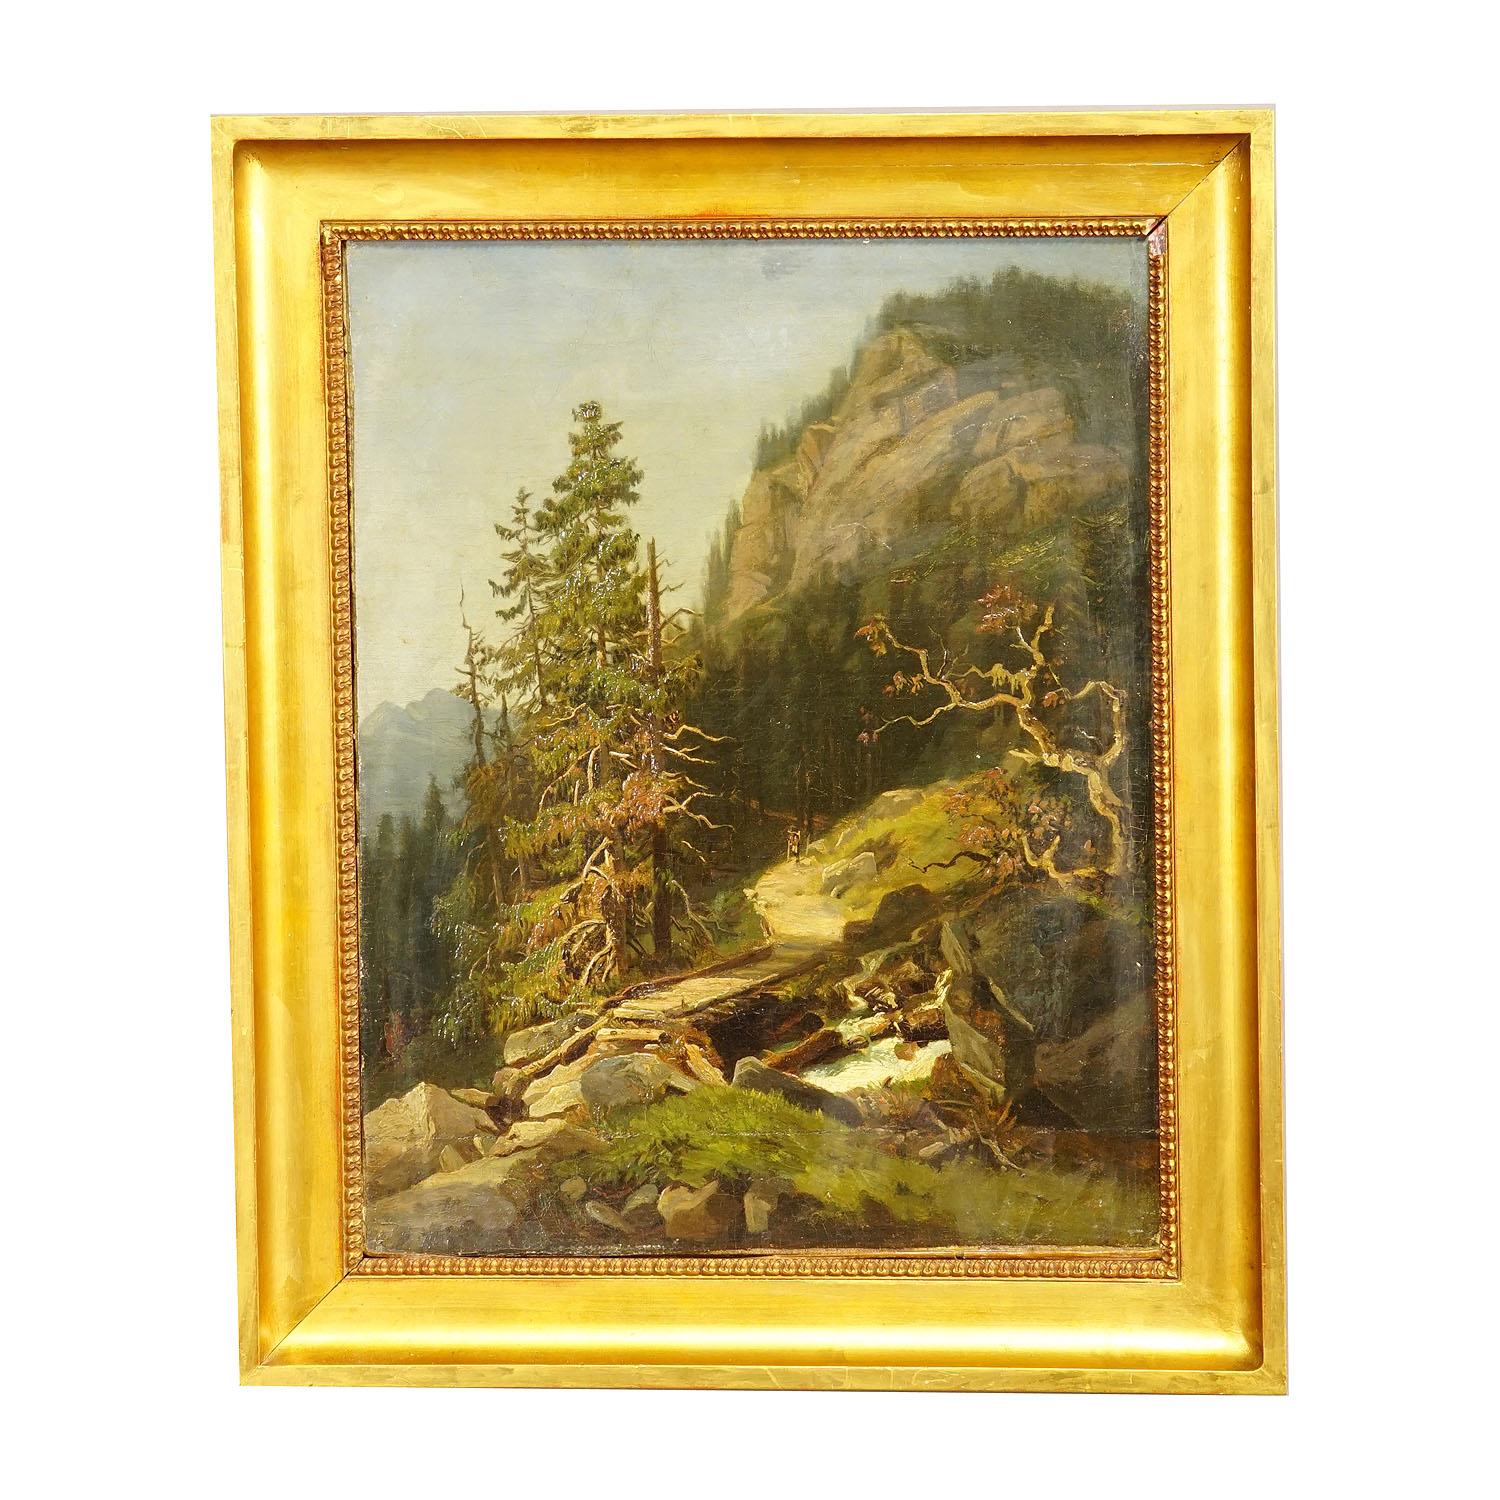 Sommerliche Berglandschaft mit Wanderer auf Wanderweg, 19. Jahrhundert.

Ein antikes Ölgemälde, das einen Wanderer auf einem alpinen Wanderweg und eine Brücke über einen Gebirgsbach zeigt. Gemalt auf Leinwand mit Pastellfarben. Gerahmt mit antikem